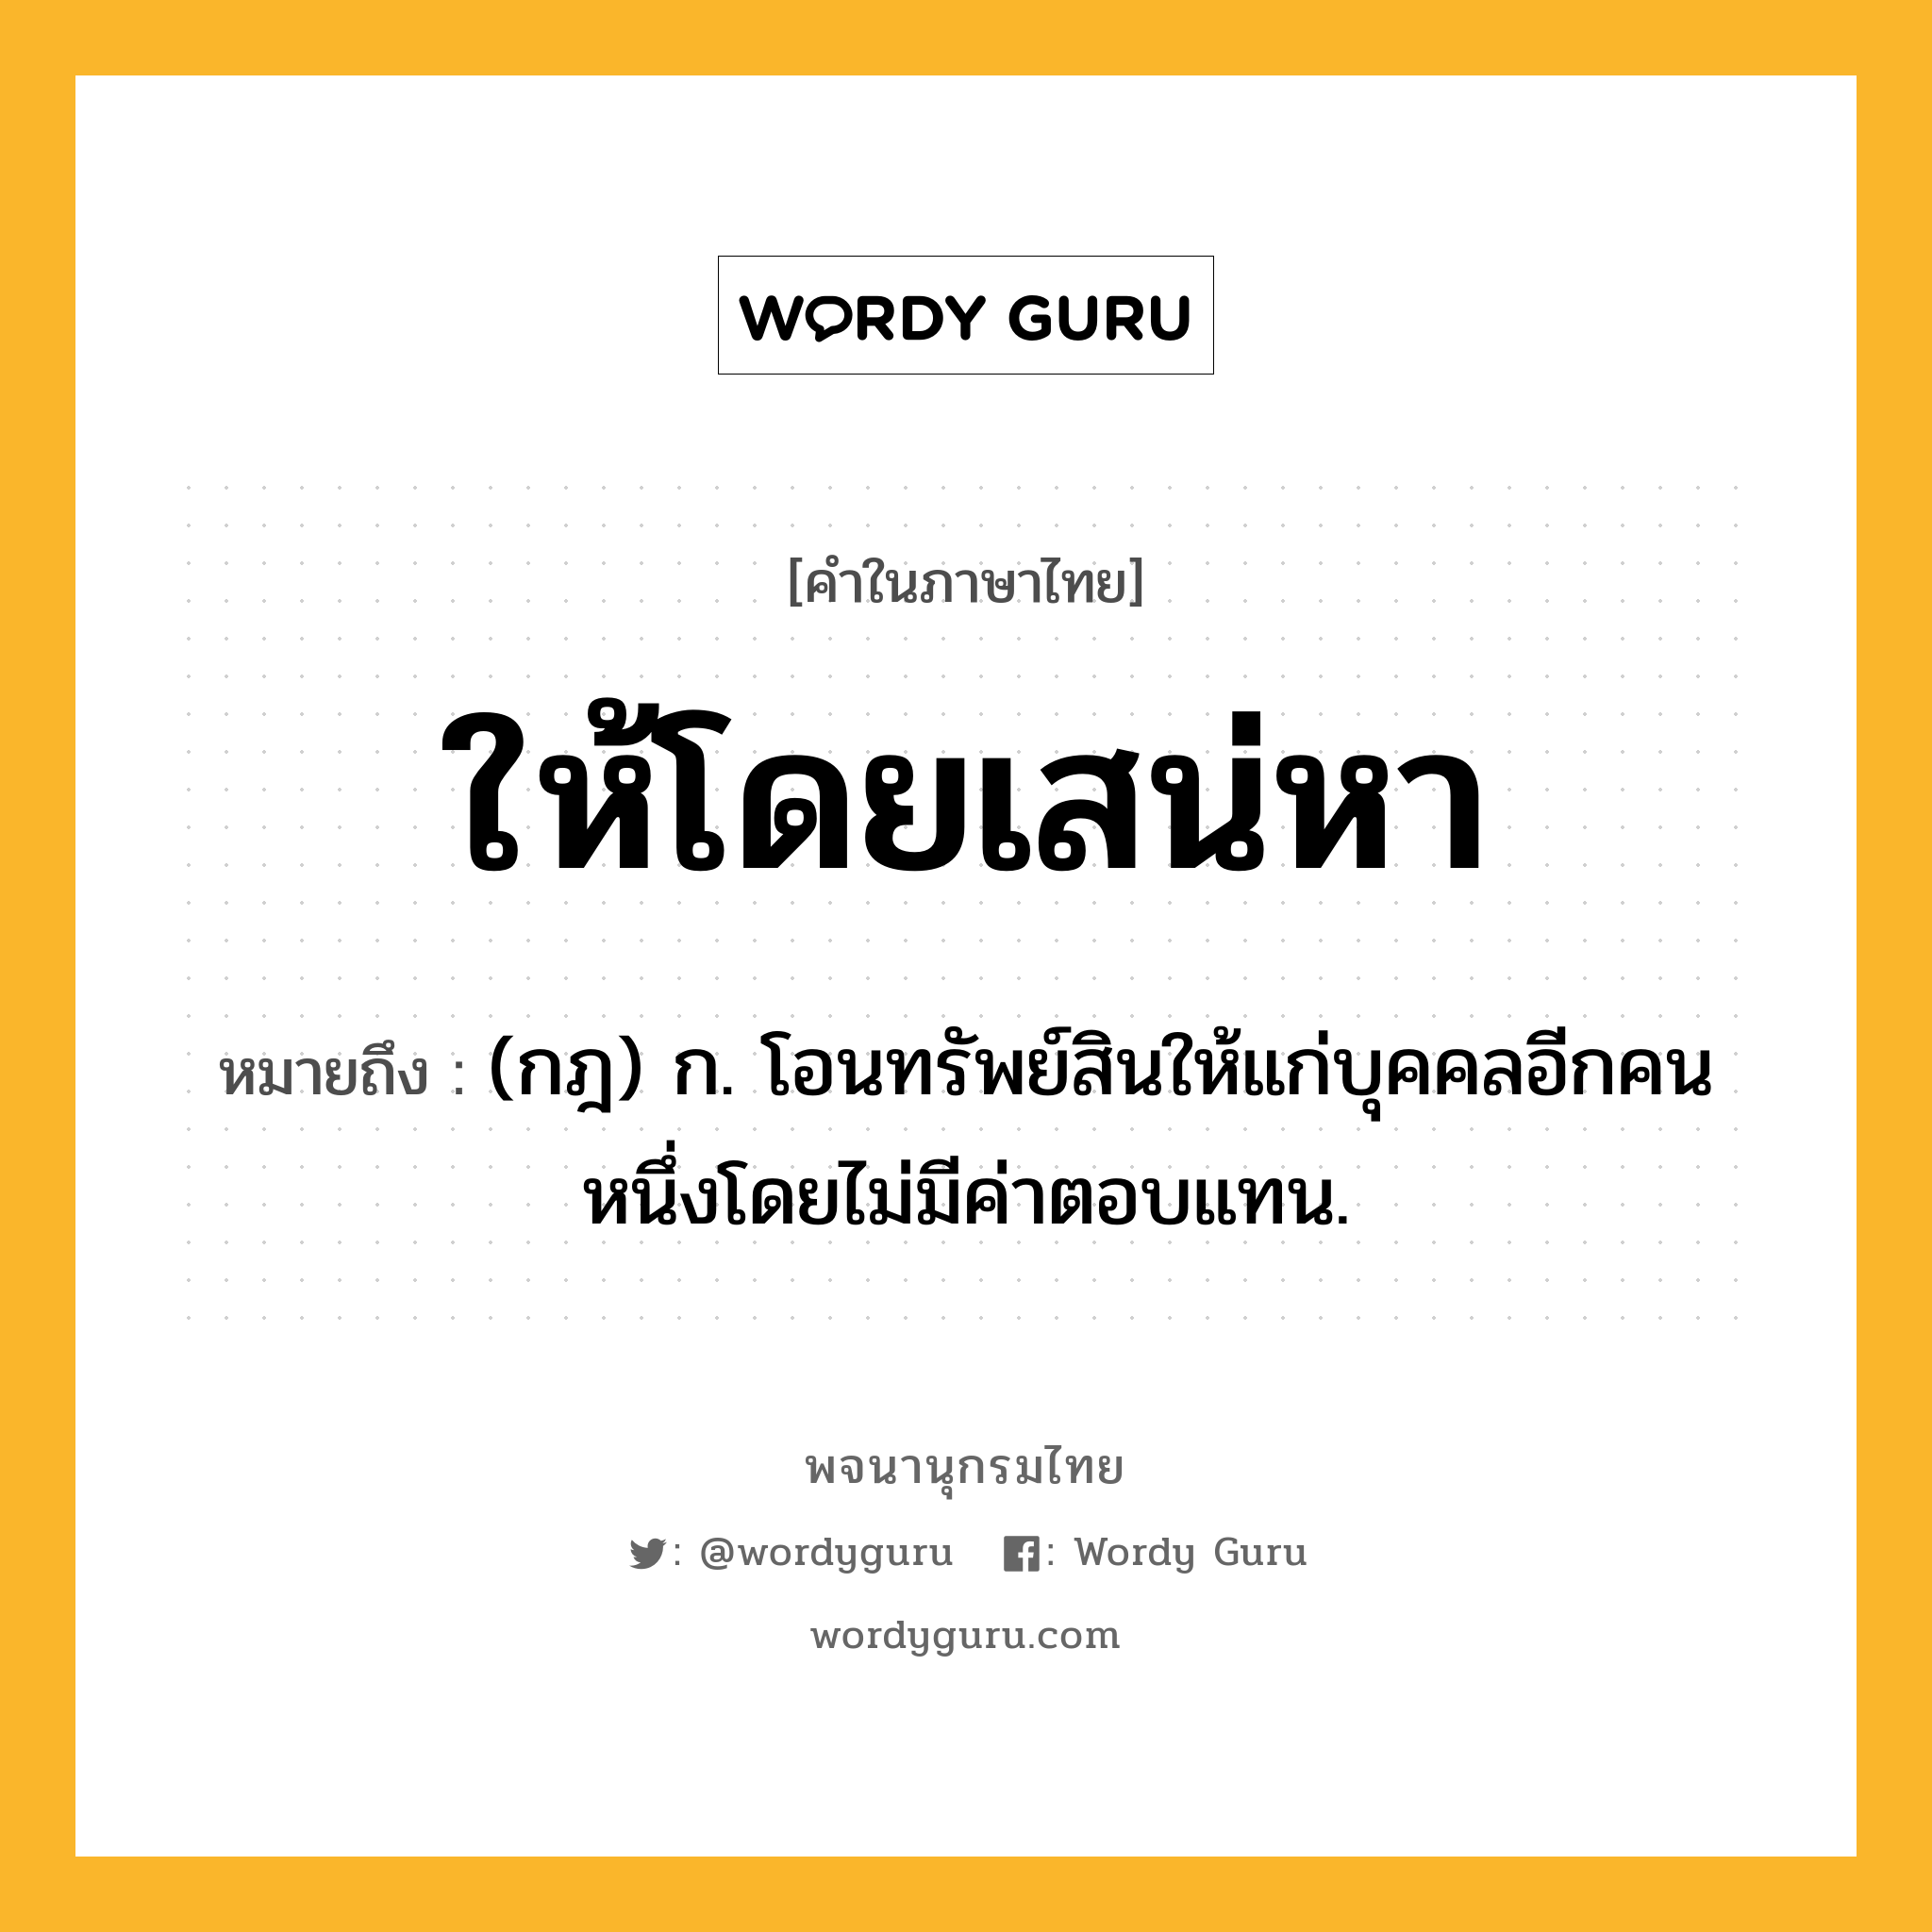 ให้โดยเสน่หา ความหมาย หมายถึงอะไร?, คำในภาษาไทย ให้โดยเสน่หา หมายถึง (กฎ) ก. โอนทรัพย์สินให้แก่บุคคลอีกคนหนึ่งโดยไม่มีค่าตอบแทน.